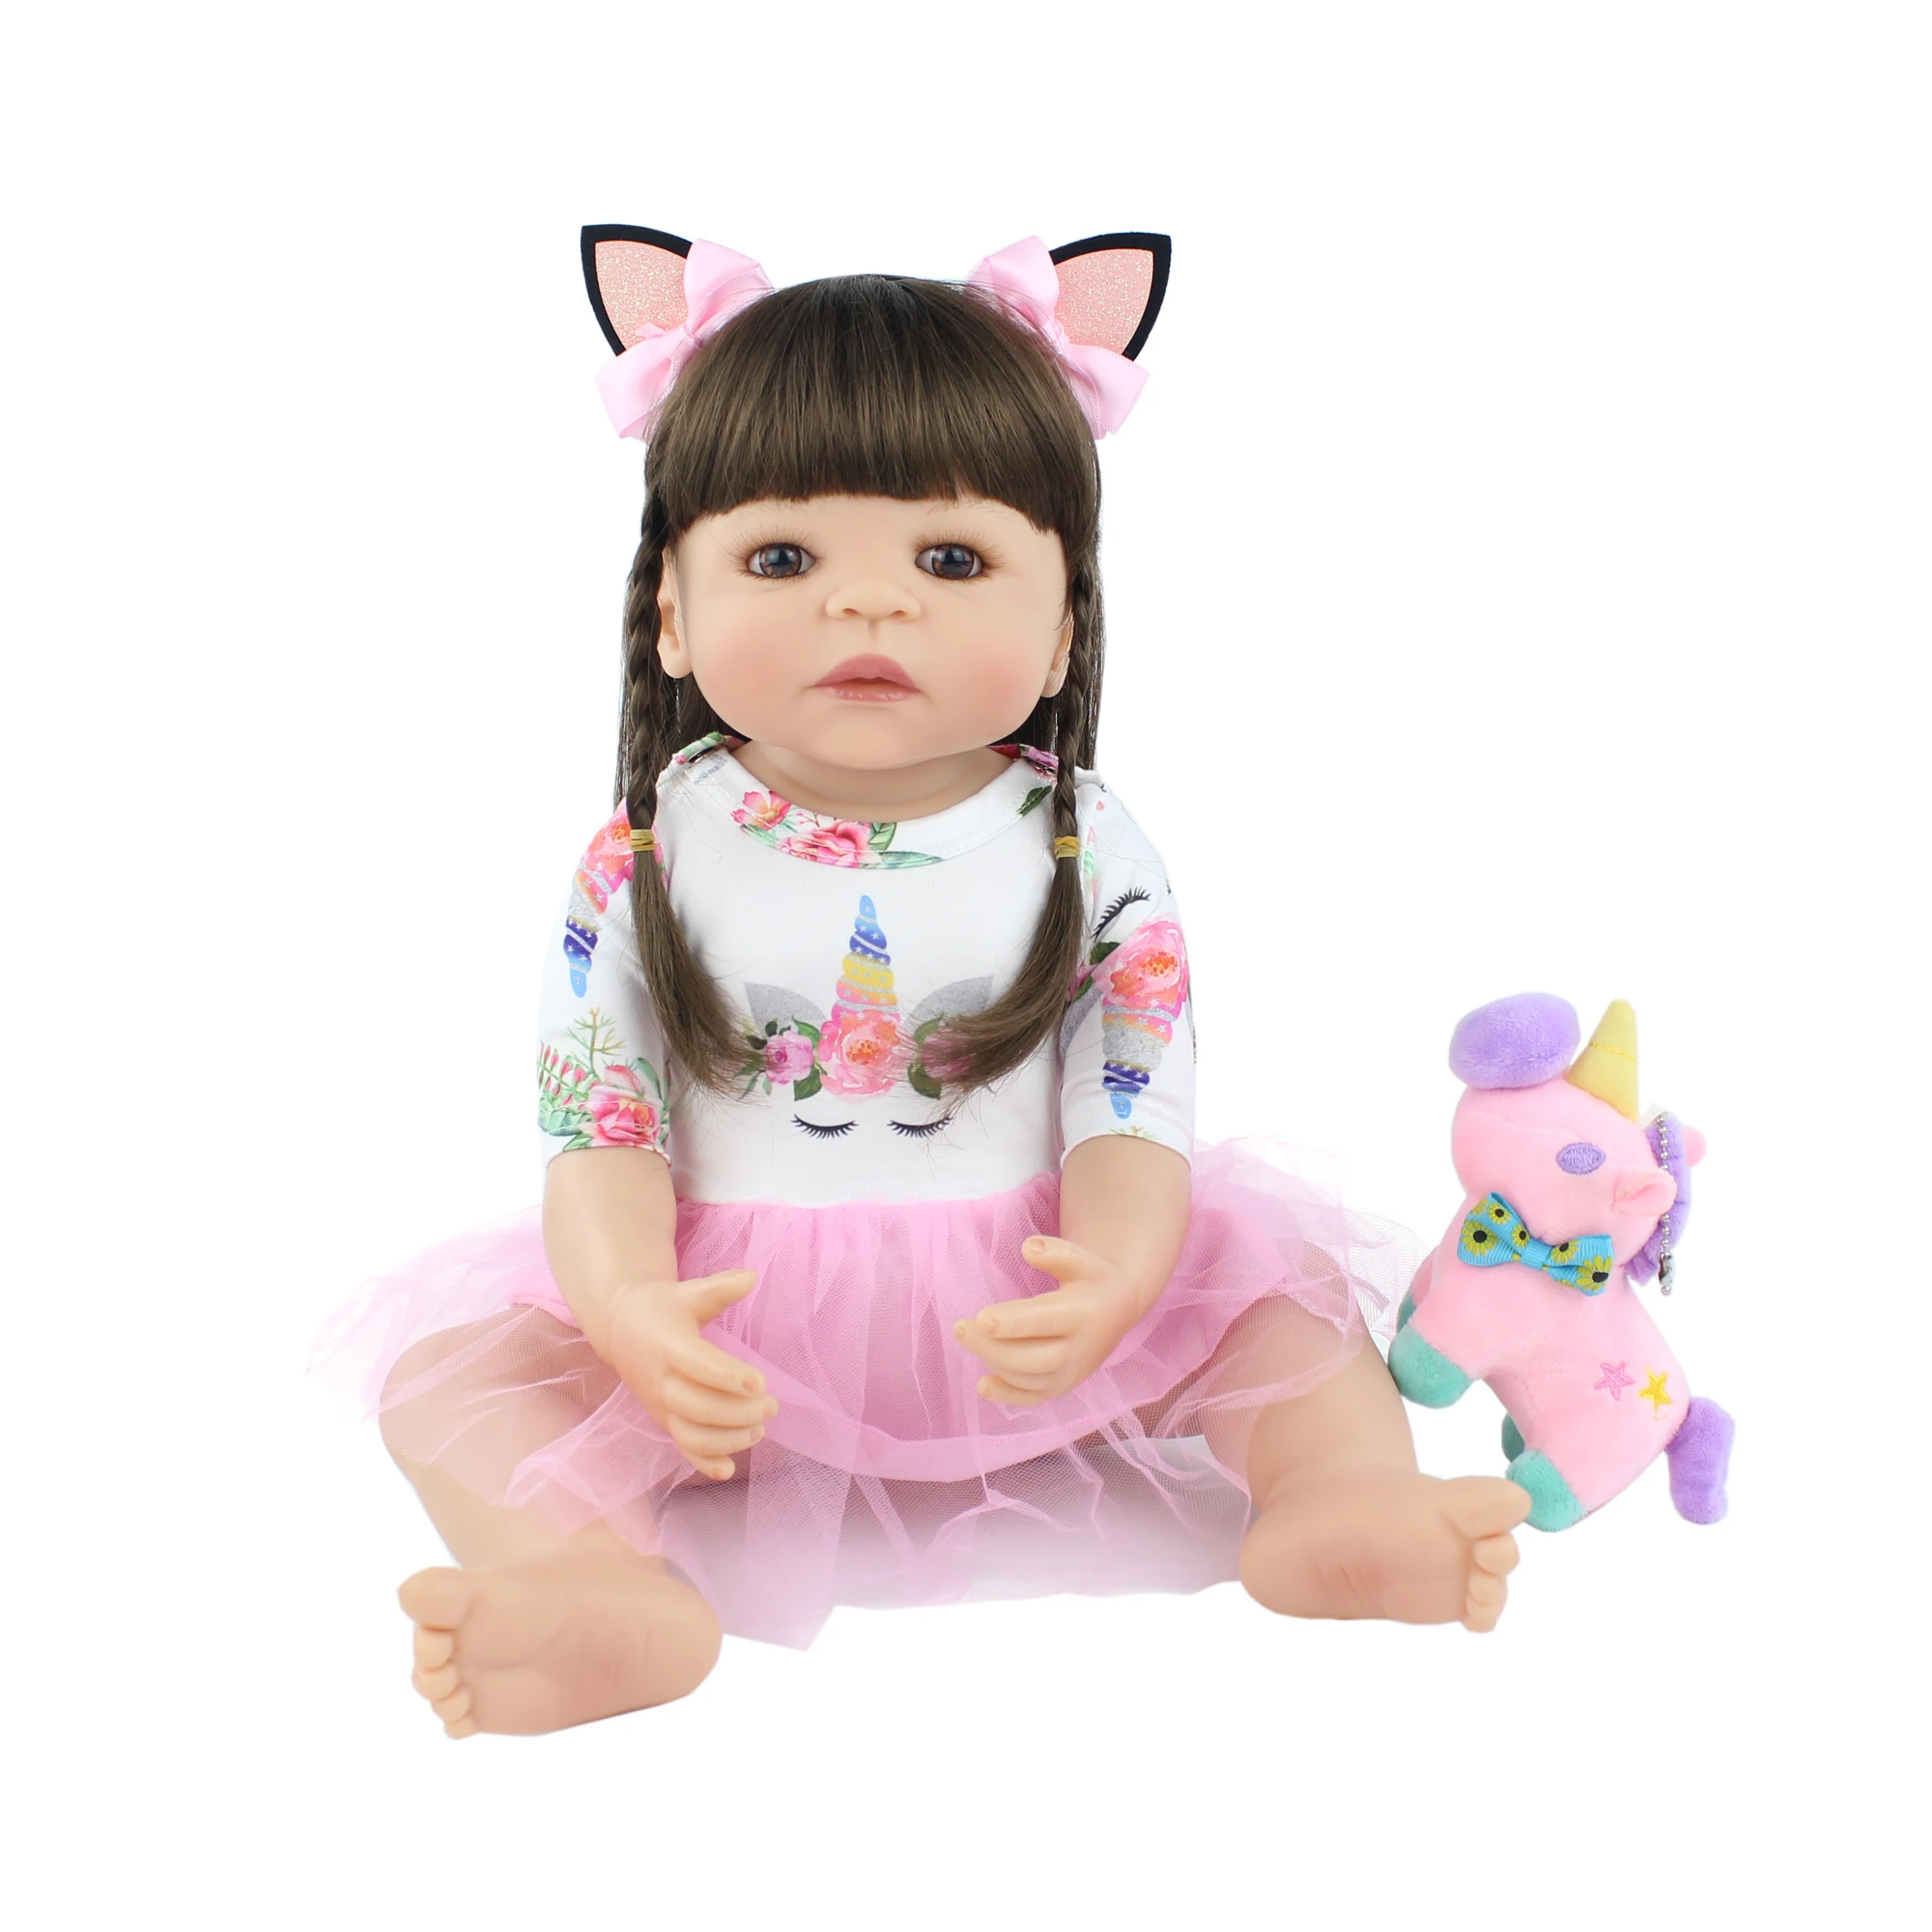 55 см полный Силиконовый Reborn Baby Doll игрушка для девочки новорожденная принцесса малыш живые Младенцы Bebe классический Boneca Bathe детская игрушка для подарка